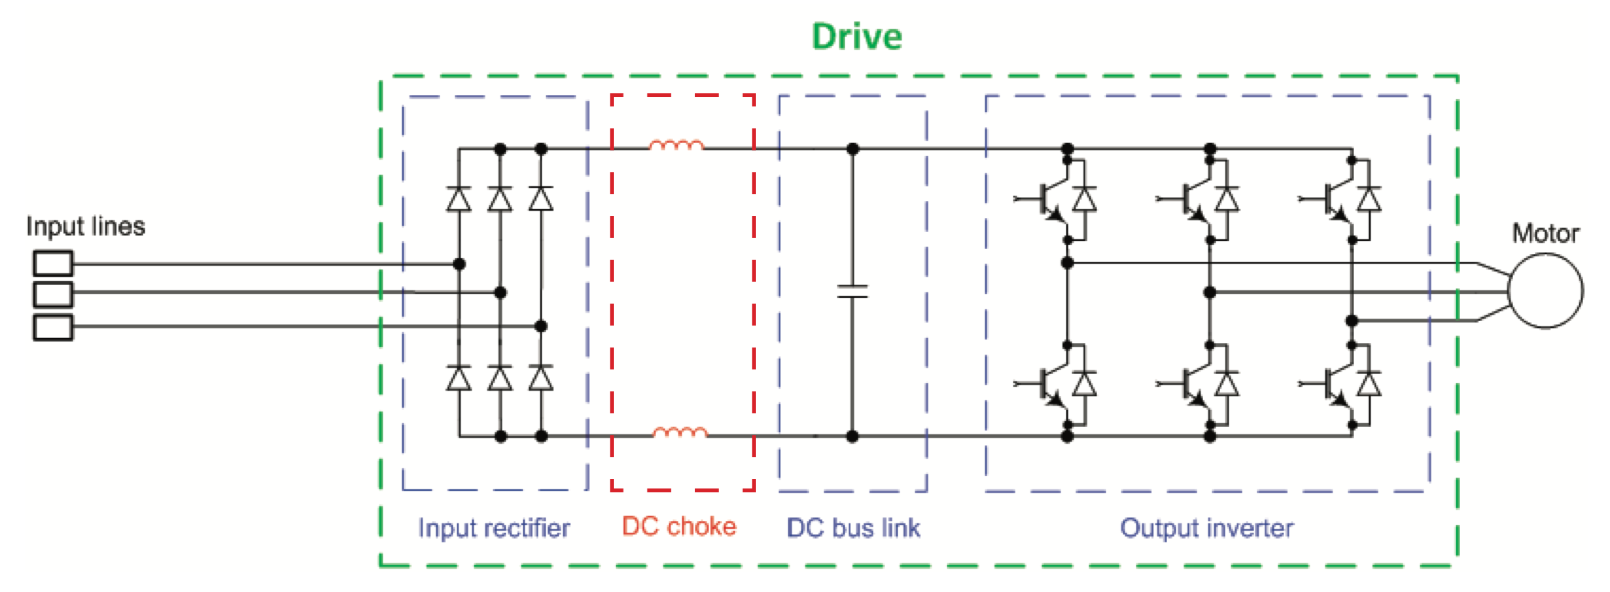 DC bus choke